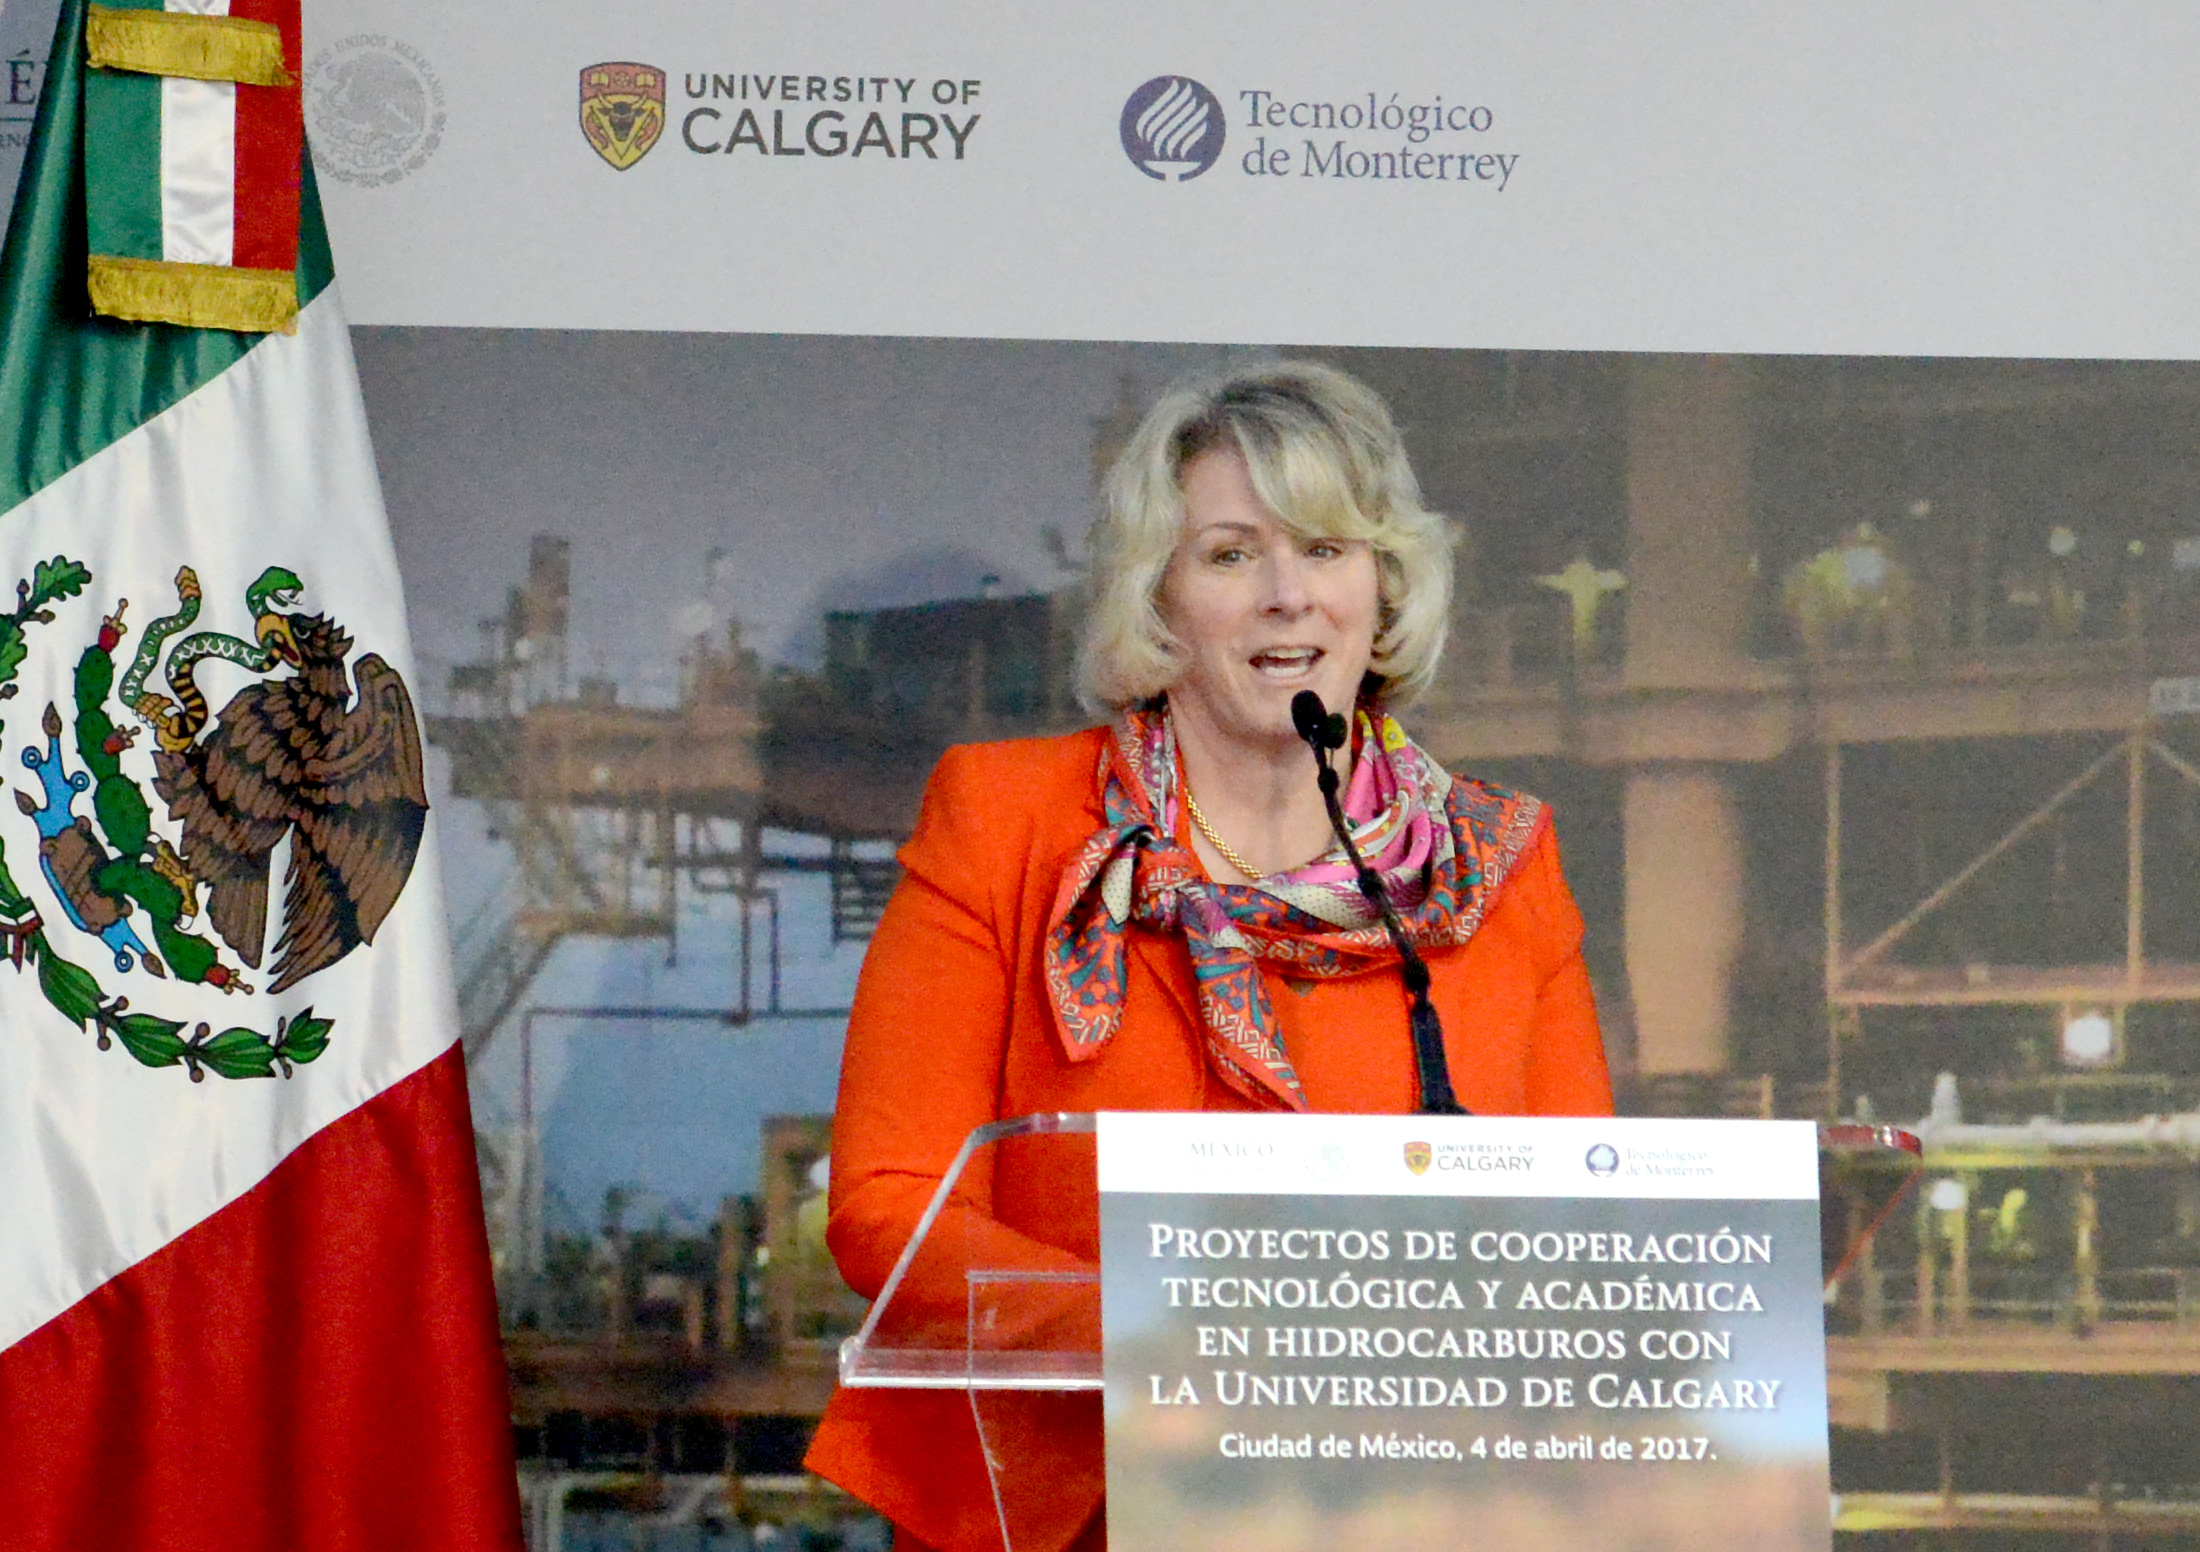 Elizabeth Cannon, Presidenta de la Universidad de Calgary, señaló que estos proyectos son una oportunidad para construir una red de expertos innovadores que pueden añadir sus conocimientos y experiencias para transformar el sector energético que beneficiará a esta y a futuras generaciones.